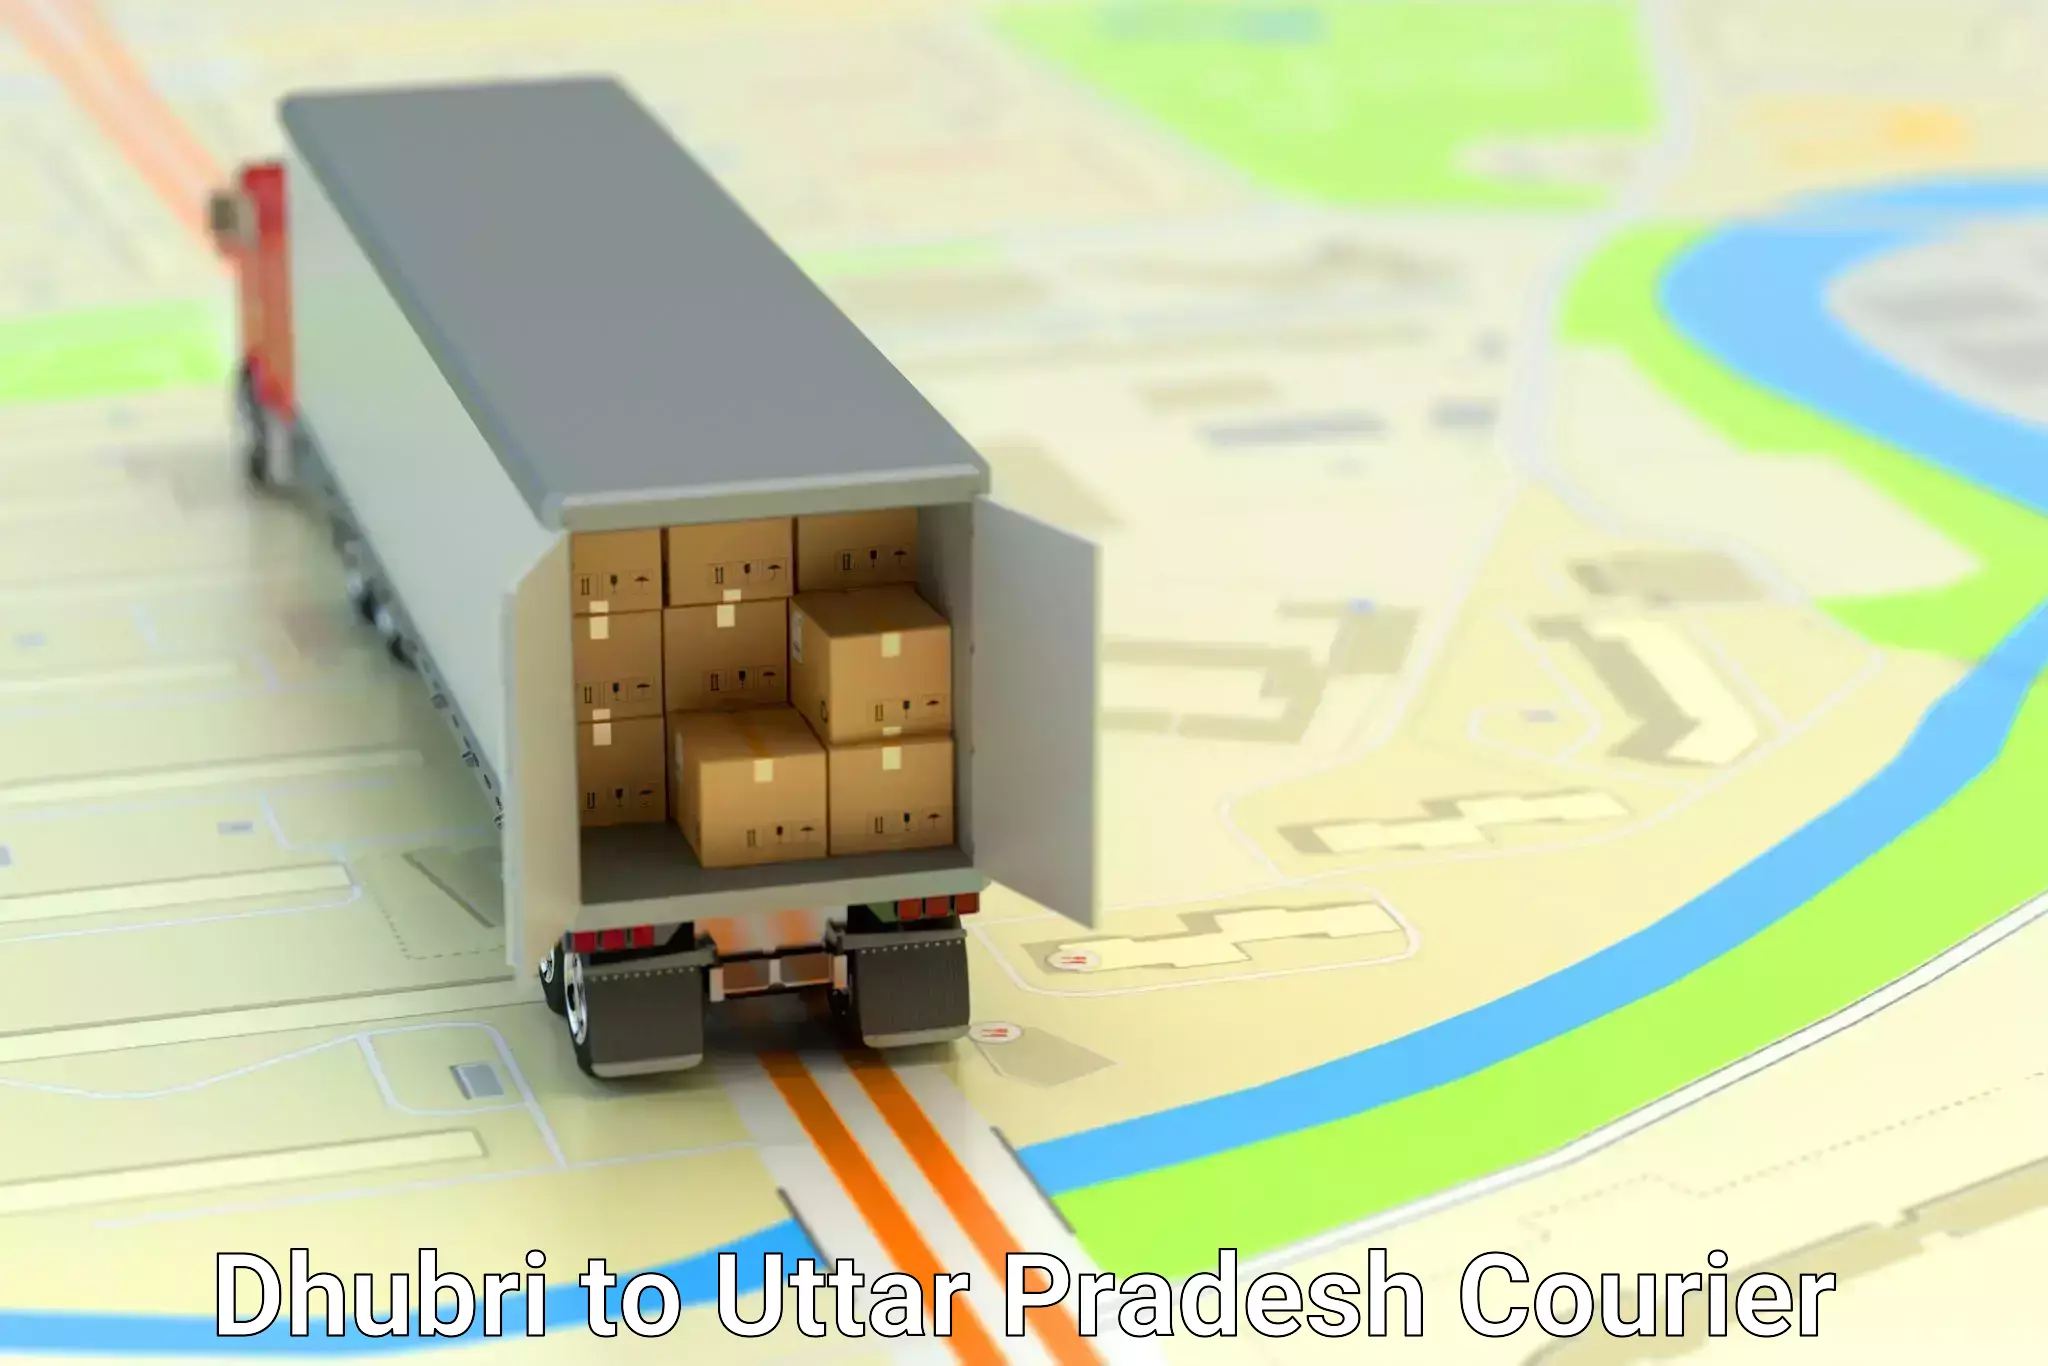 Premium courier solutions Dhubri to Nagina